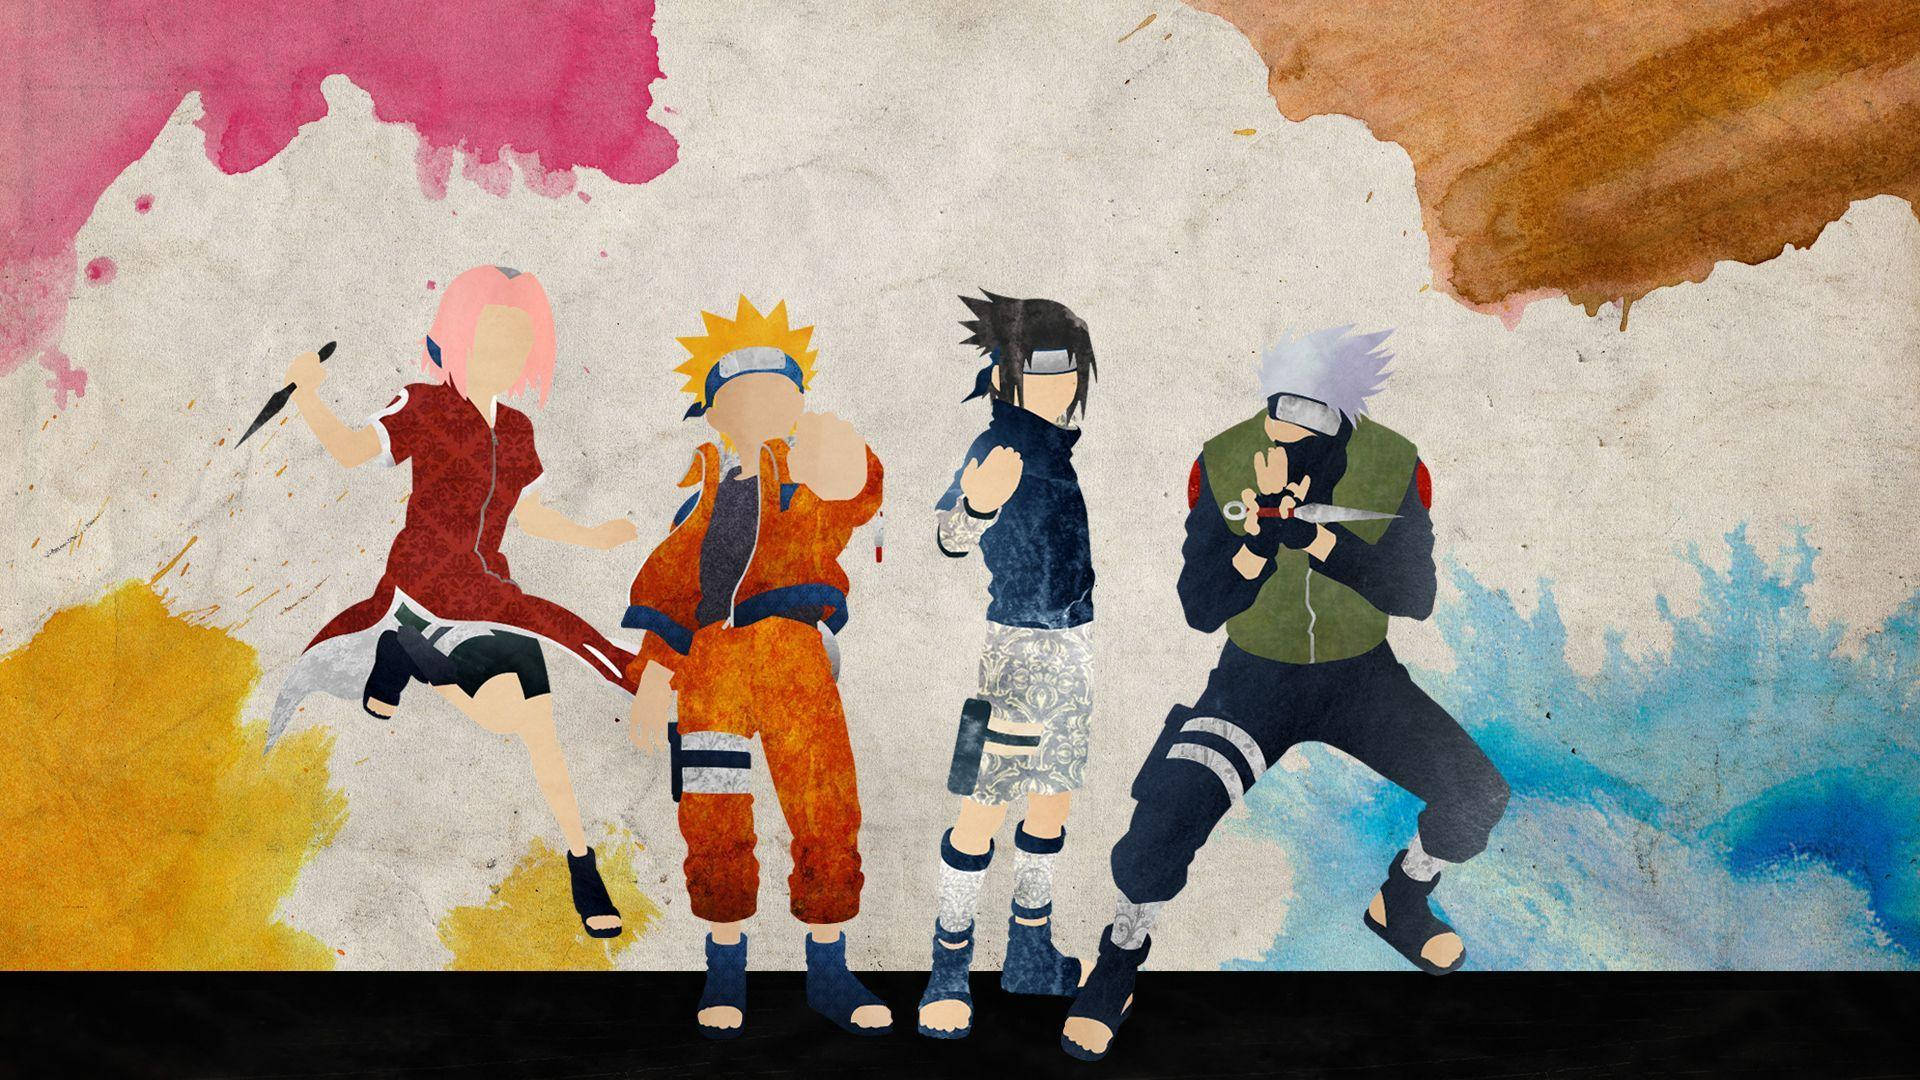 Naruto Team 7 Poster Digital Art Wallpaper